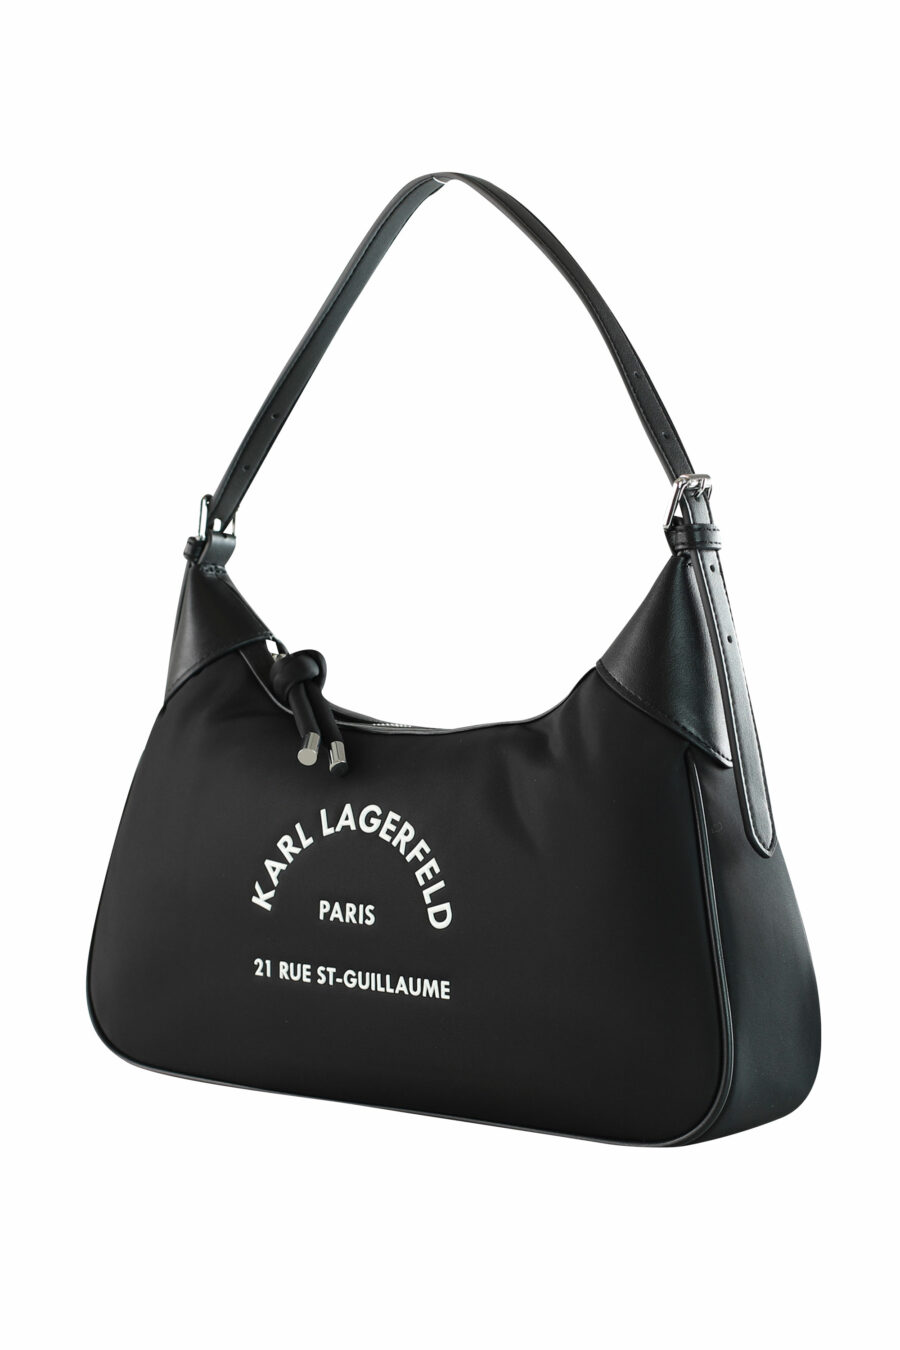 Black shoulder bag with "rue st guillaume" logo - 8720744103899 2